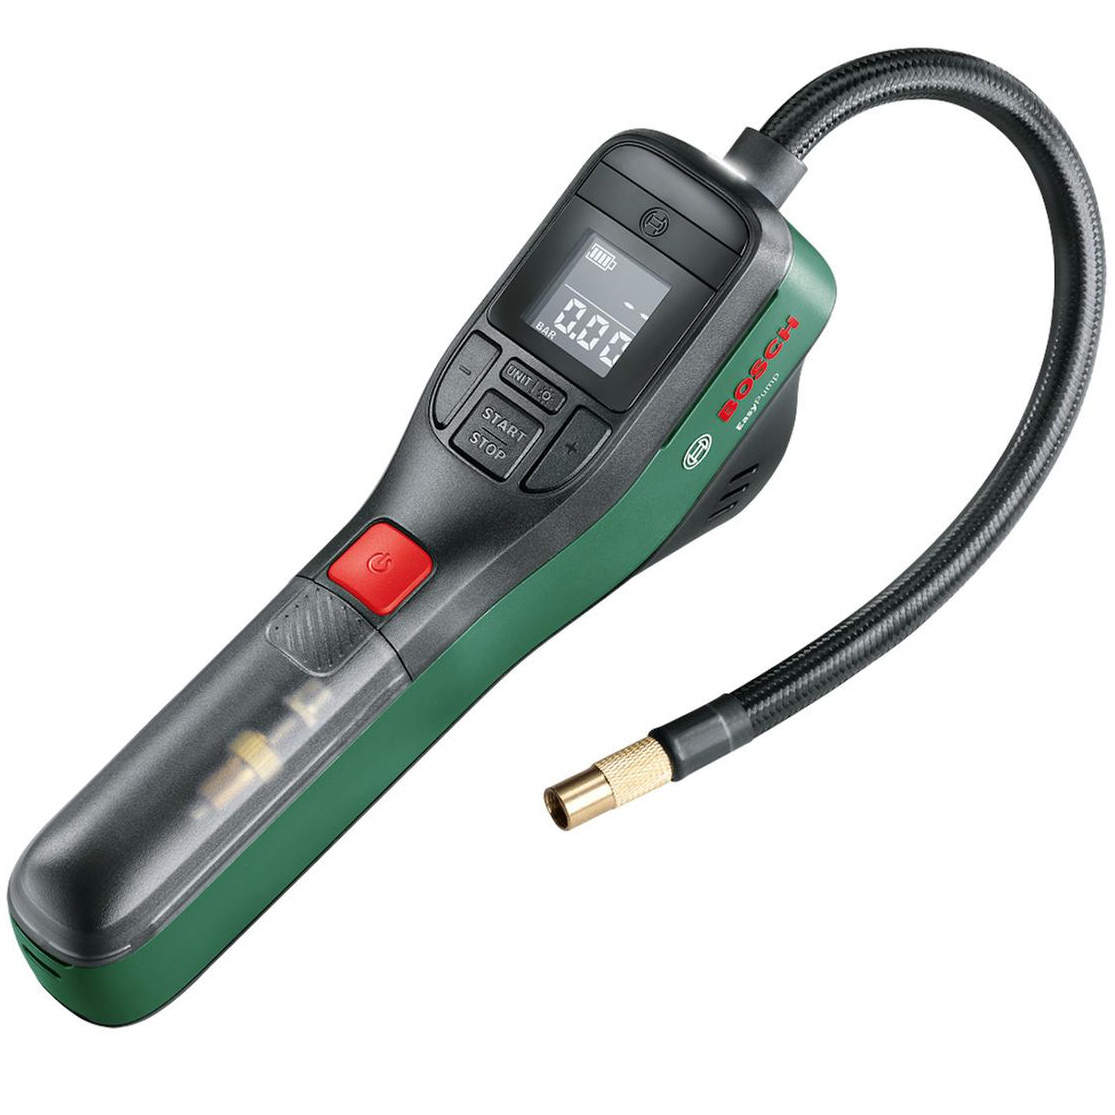 Immagine prodotto da Bosch Easy Pump - Pompa Pneumatica a Batteria - nero/verde